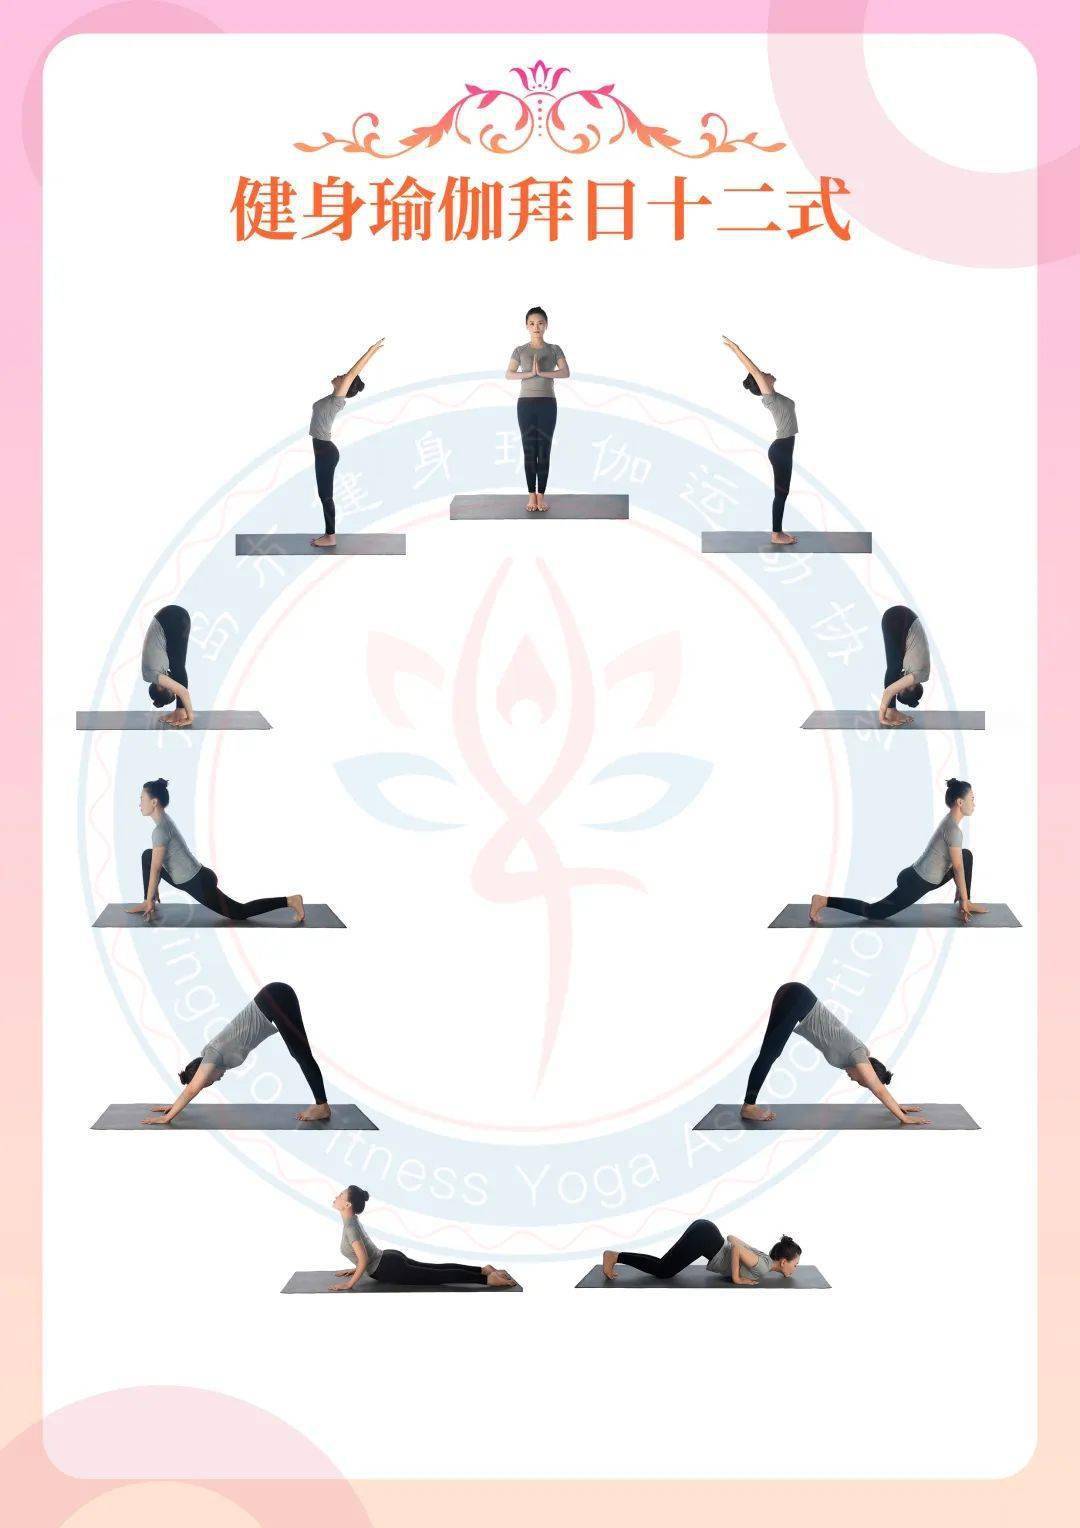 全民健身志愿服务主题活动 青岛市健身瑜伽运动协会开展“125国际志愿者日”全民服务泛亚电竞主题活动(图1)